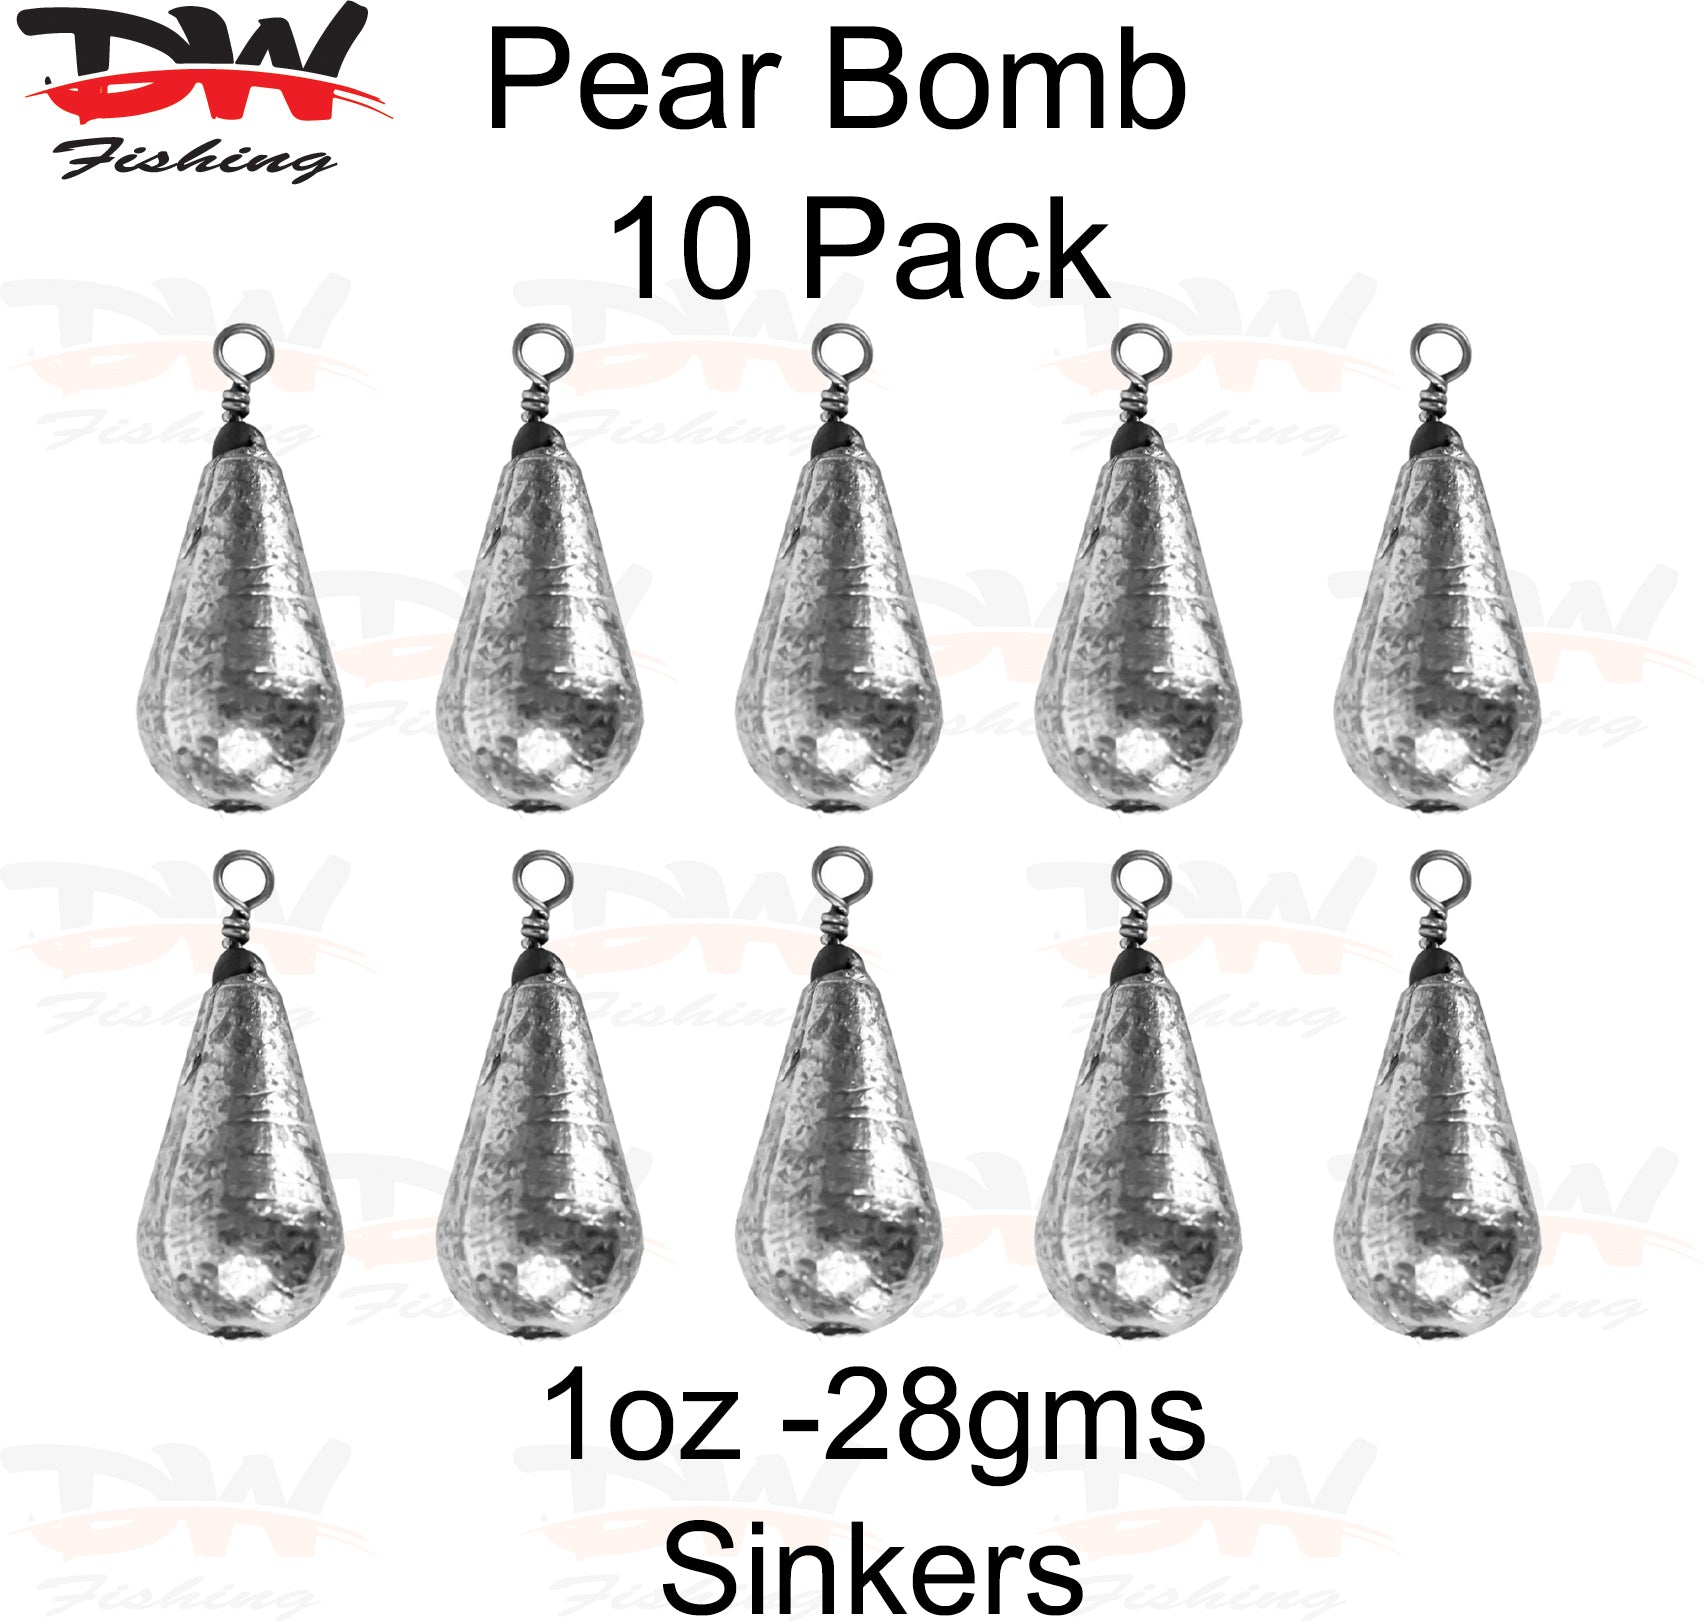 Pear bomb reef sinker 1oz-28gms 10 pack